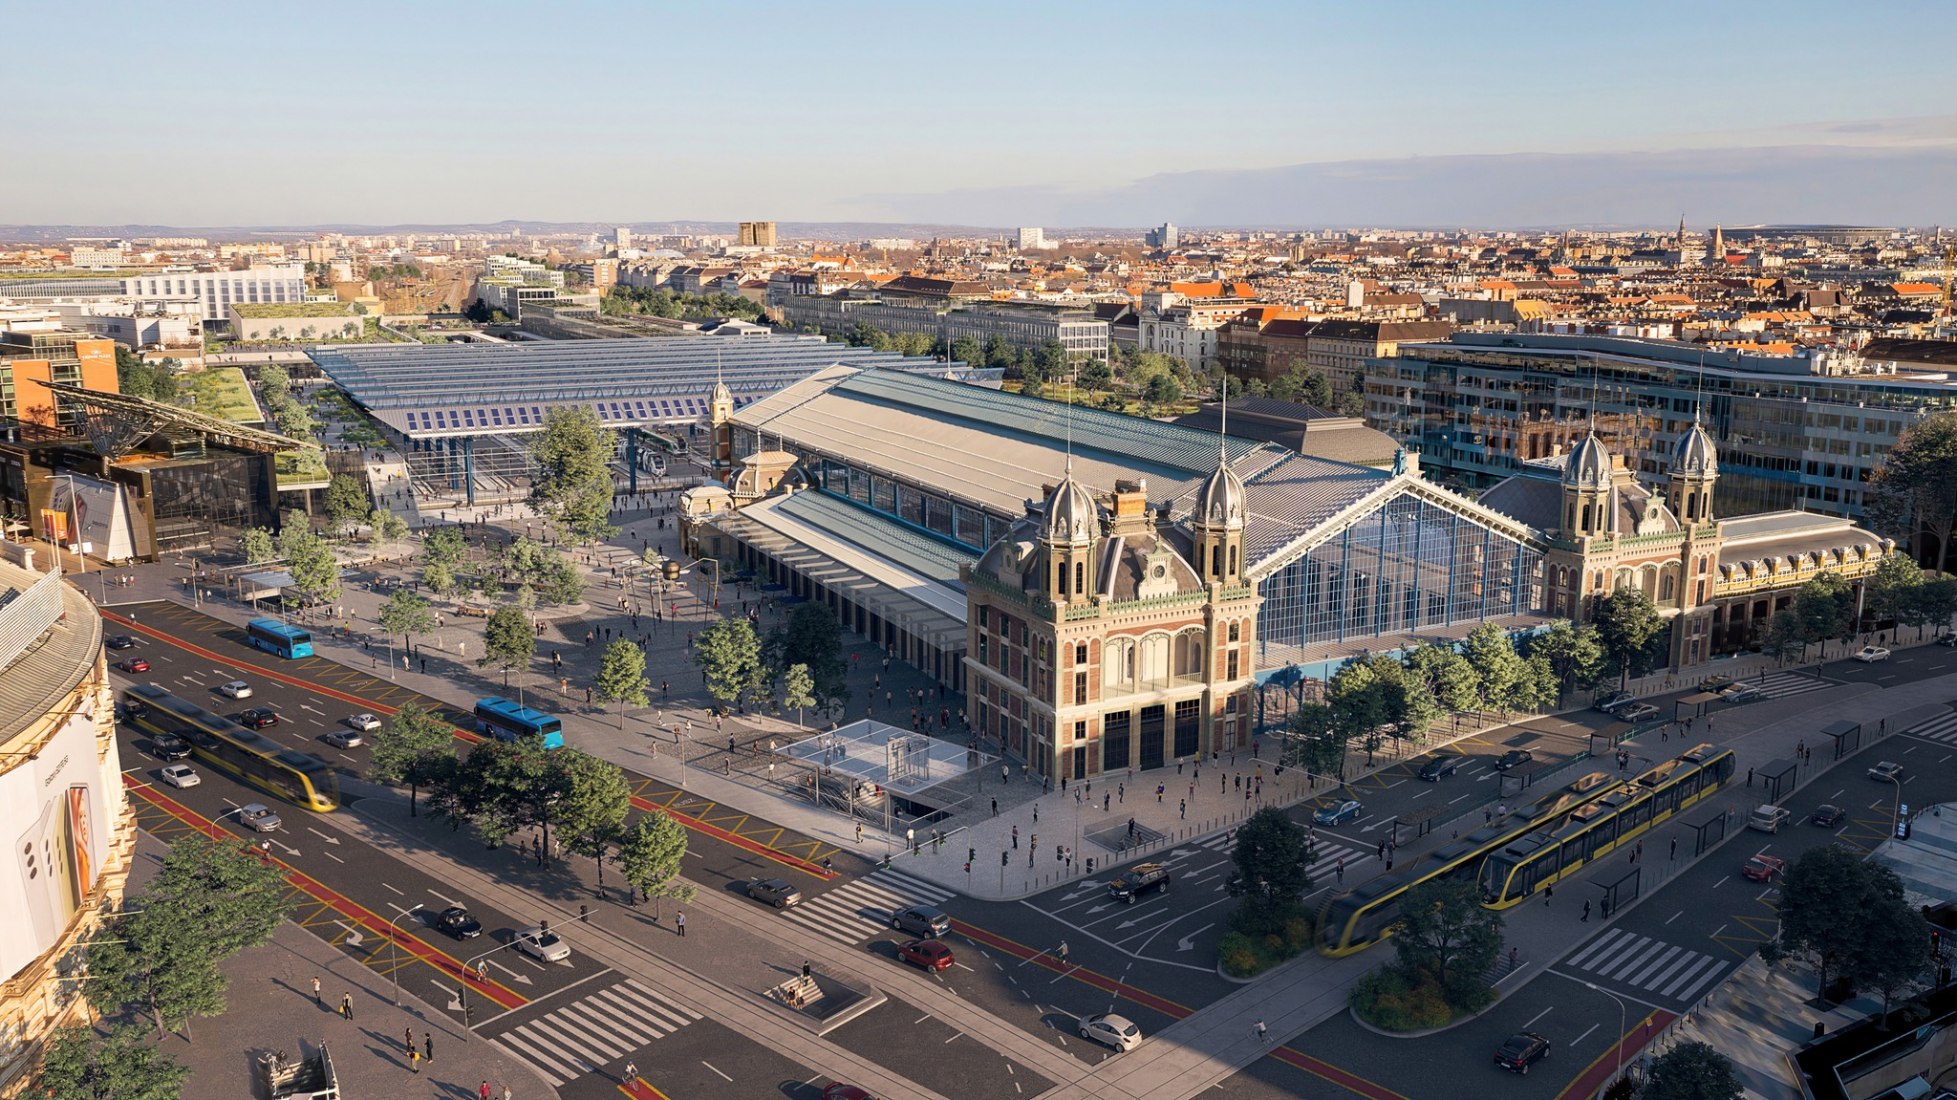 New Nyugati Railway Station in Budapest by Grimshaw. Rendering courtesy of Budapest Development Agency (BFK)